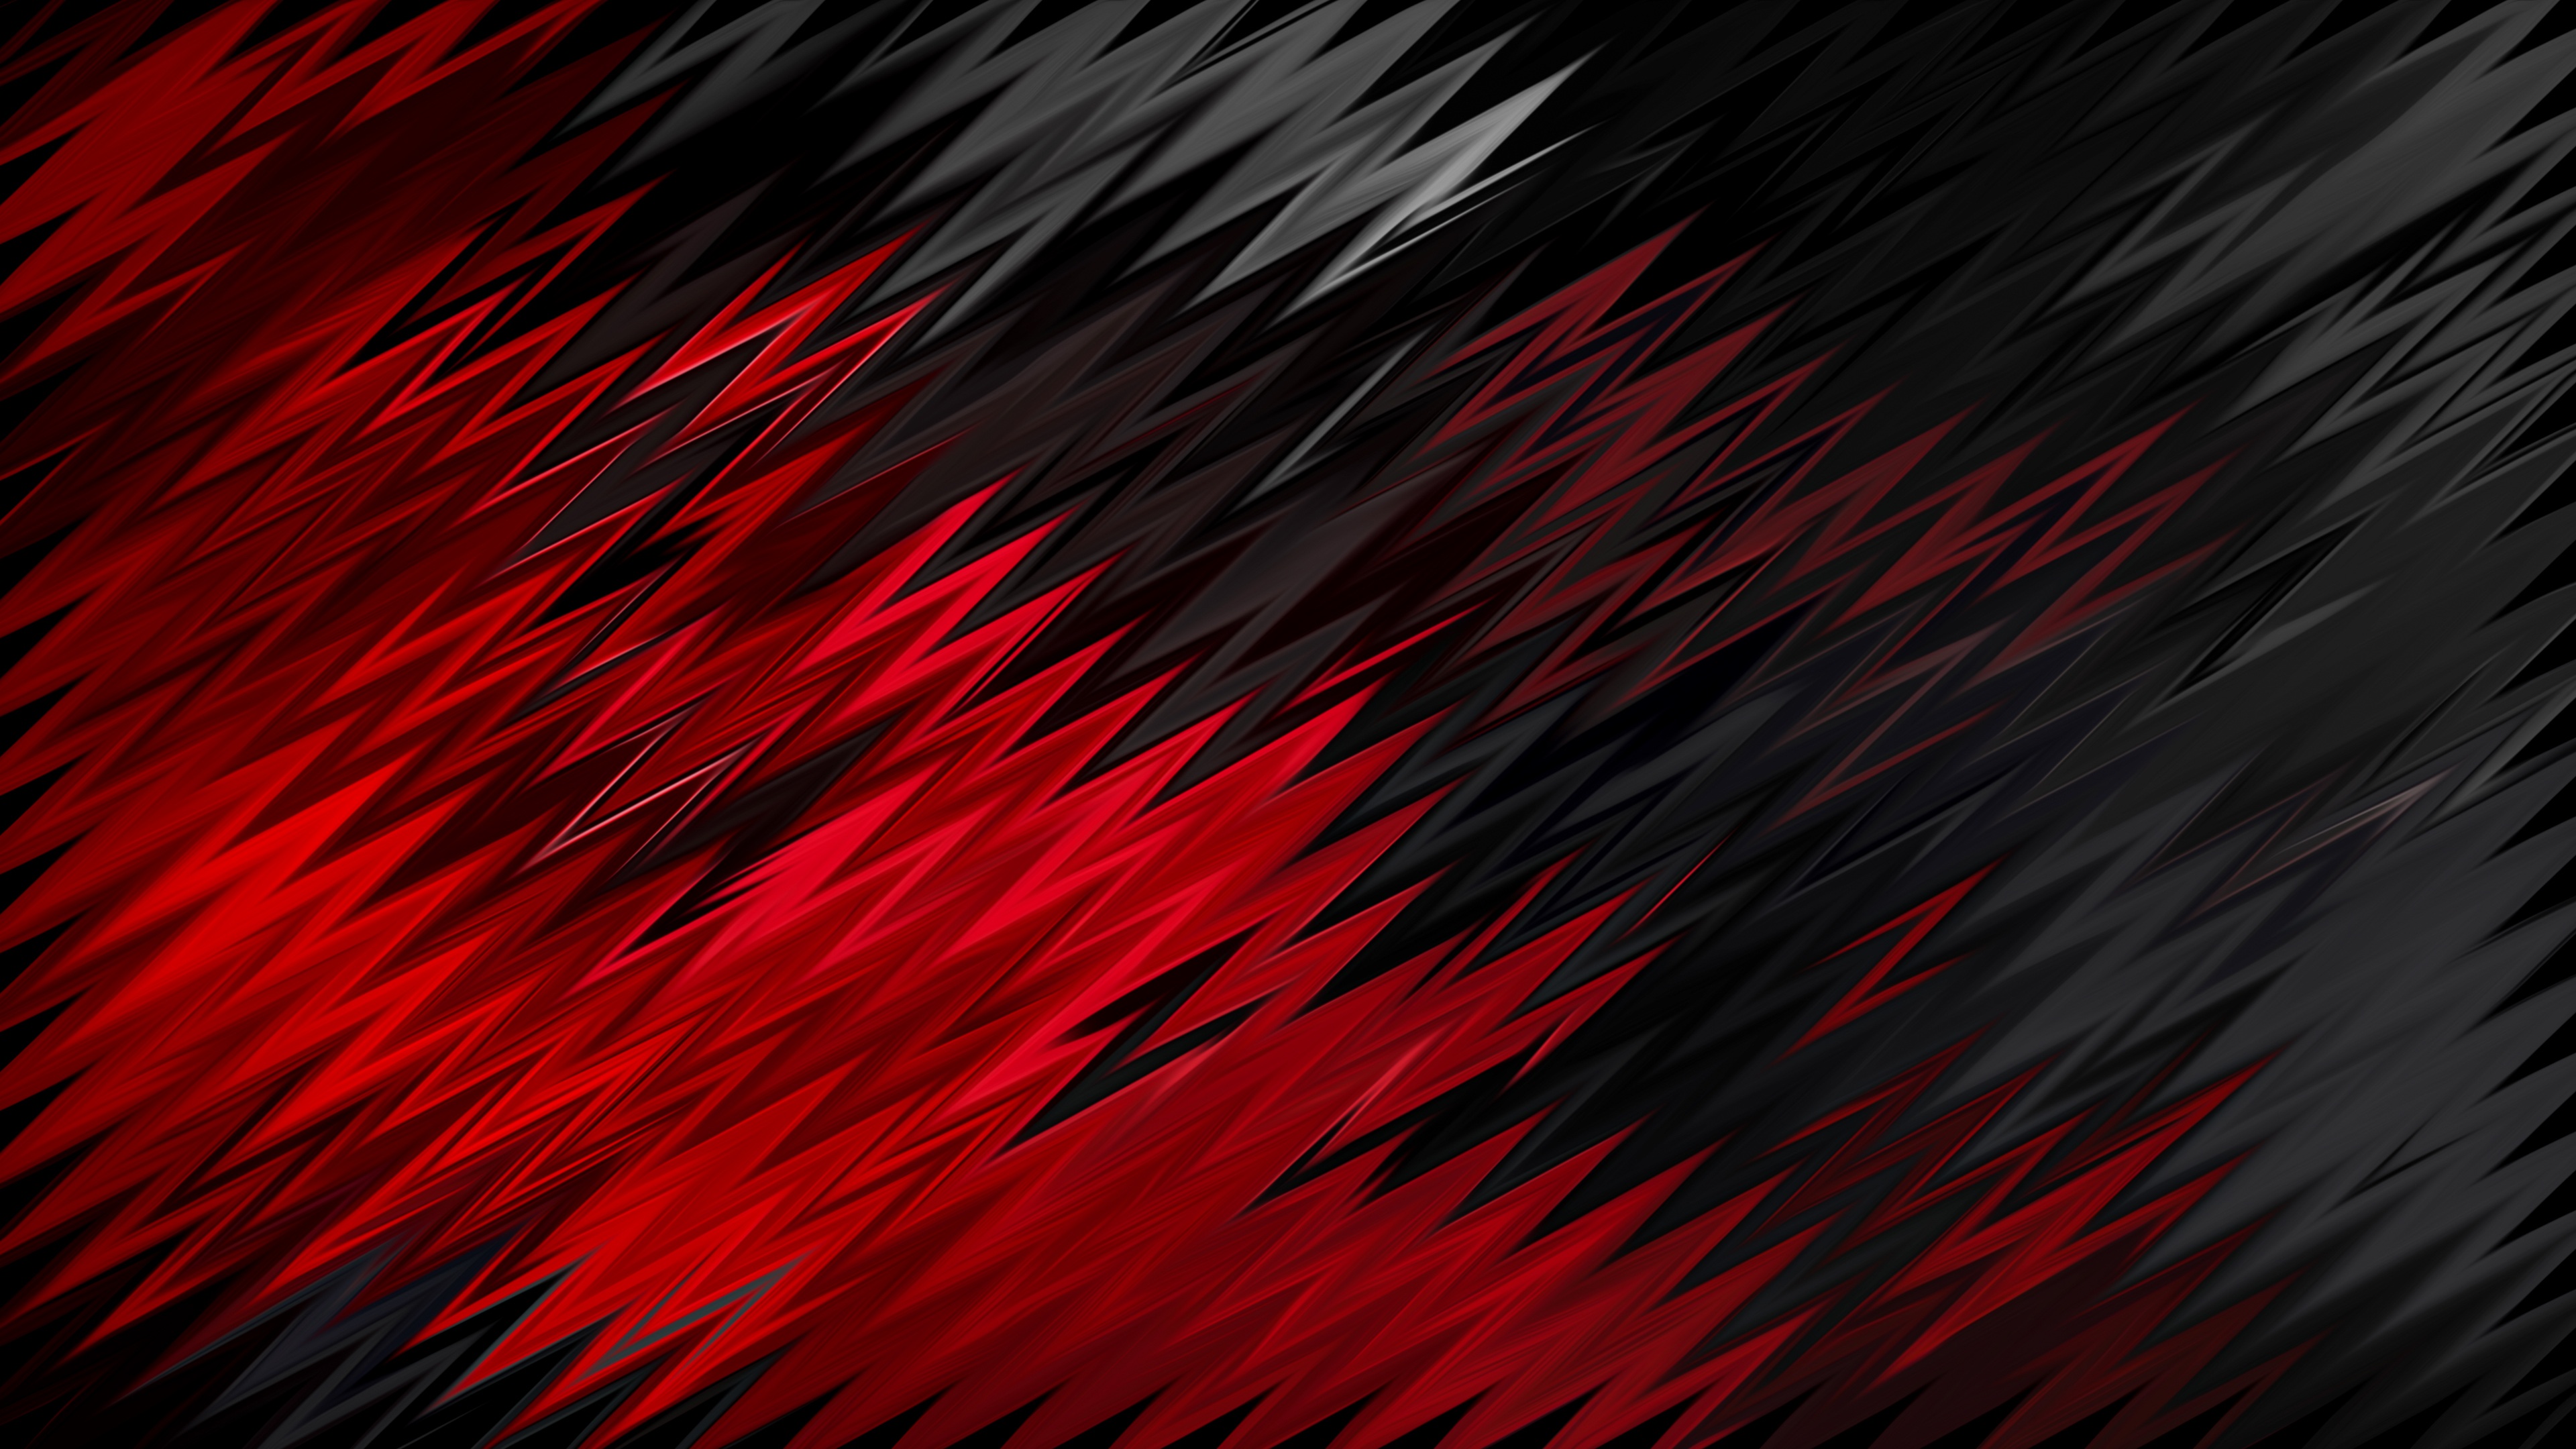 Với một mẫu hình dáng sắc nét, hình nền 4K đỏ đen này sẽ làm cho điện thoại của bạn trở nên lung linh và đẹp mắt hơn bao giờ hết. Hãy xem nó ngay để trải nghiệm sự sắc nét và độ phân giải cao của hình ảnh này!